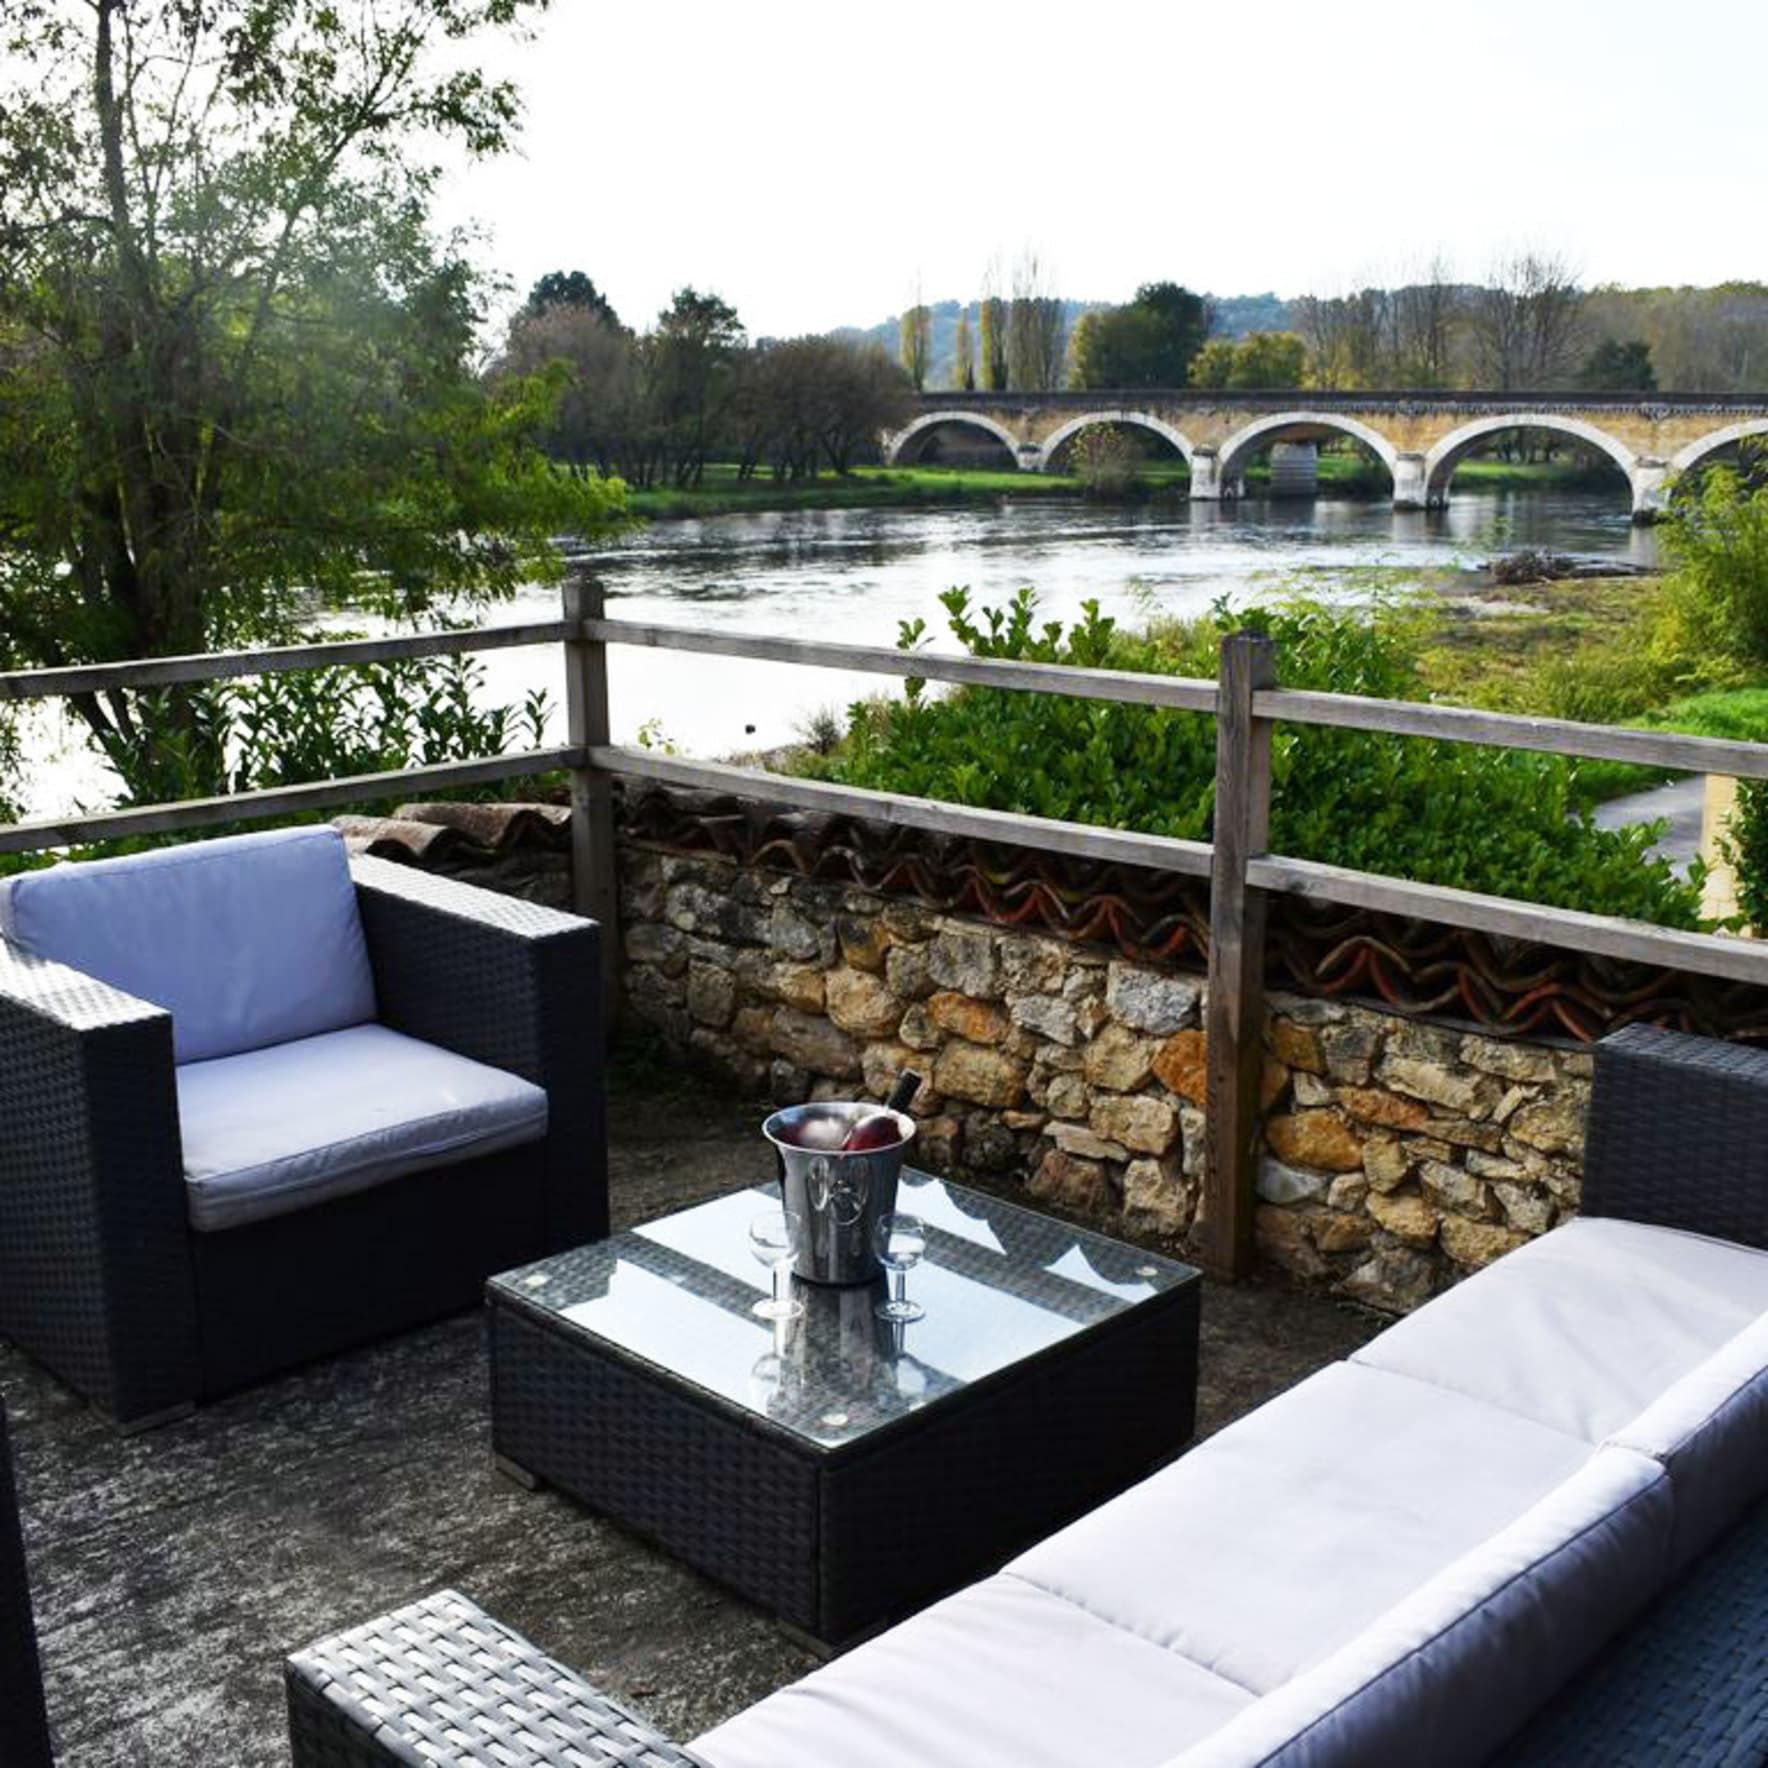 Location de vacances en Dordogne : un gîte en amoureux au bord de la rivière